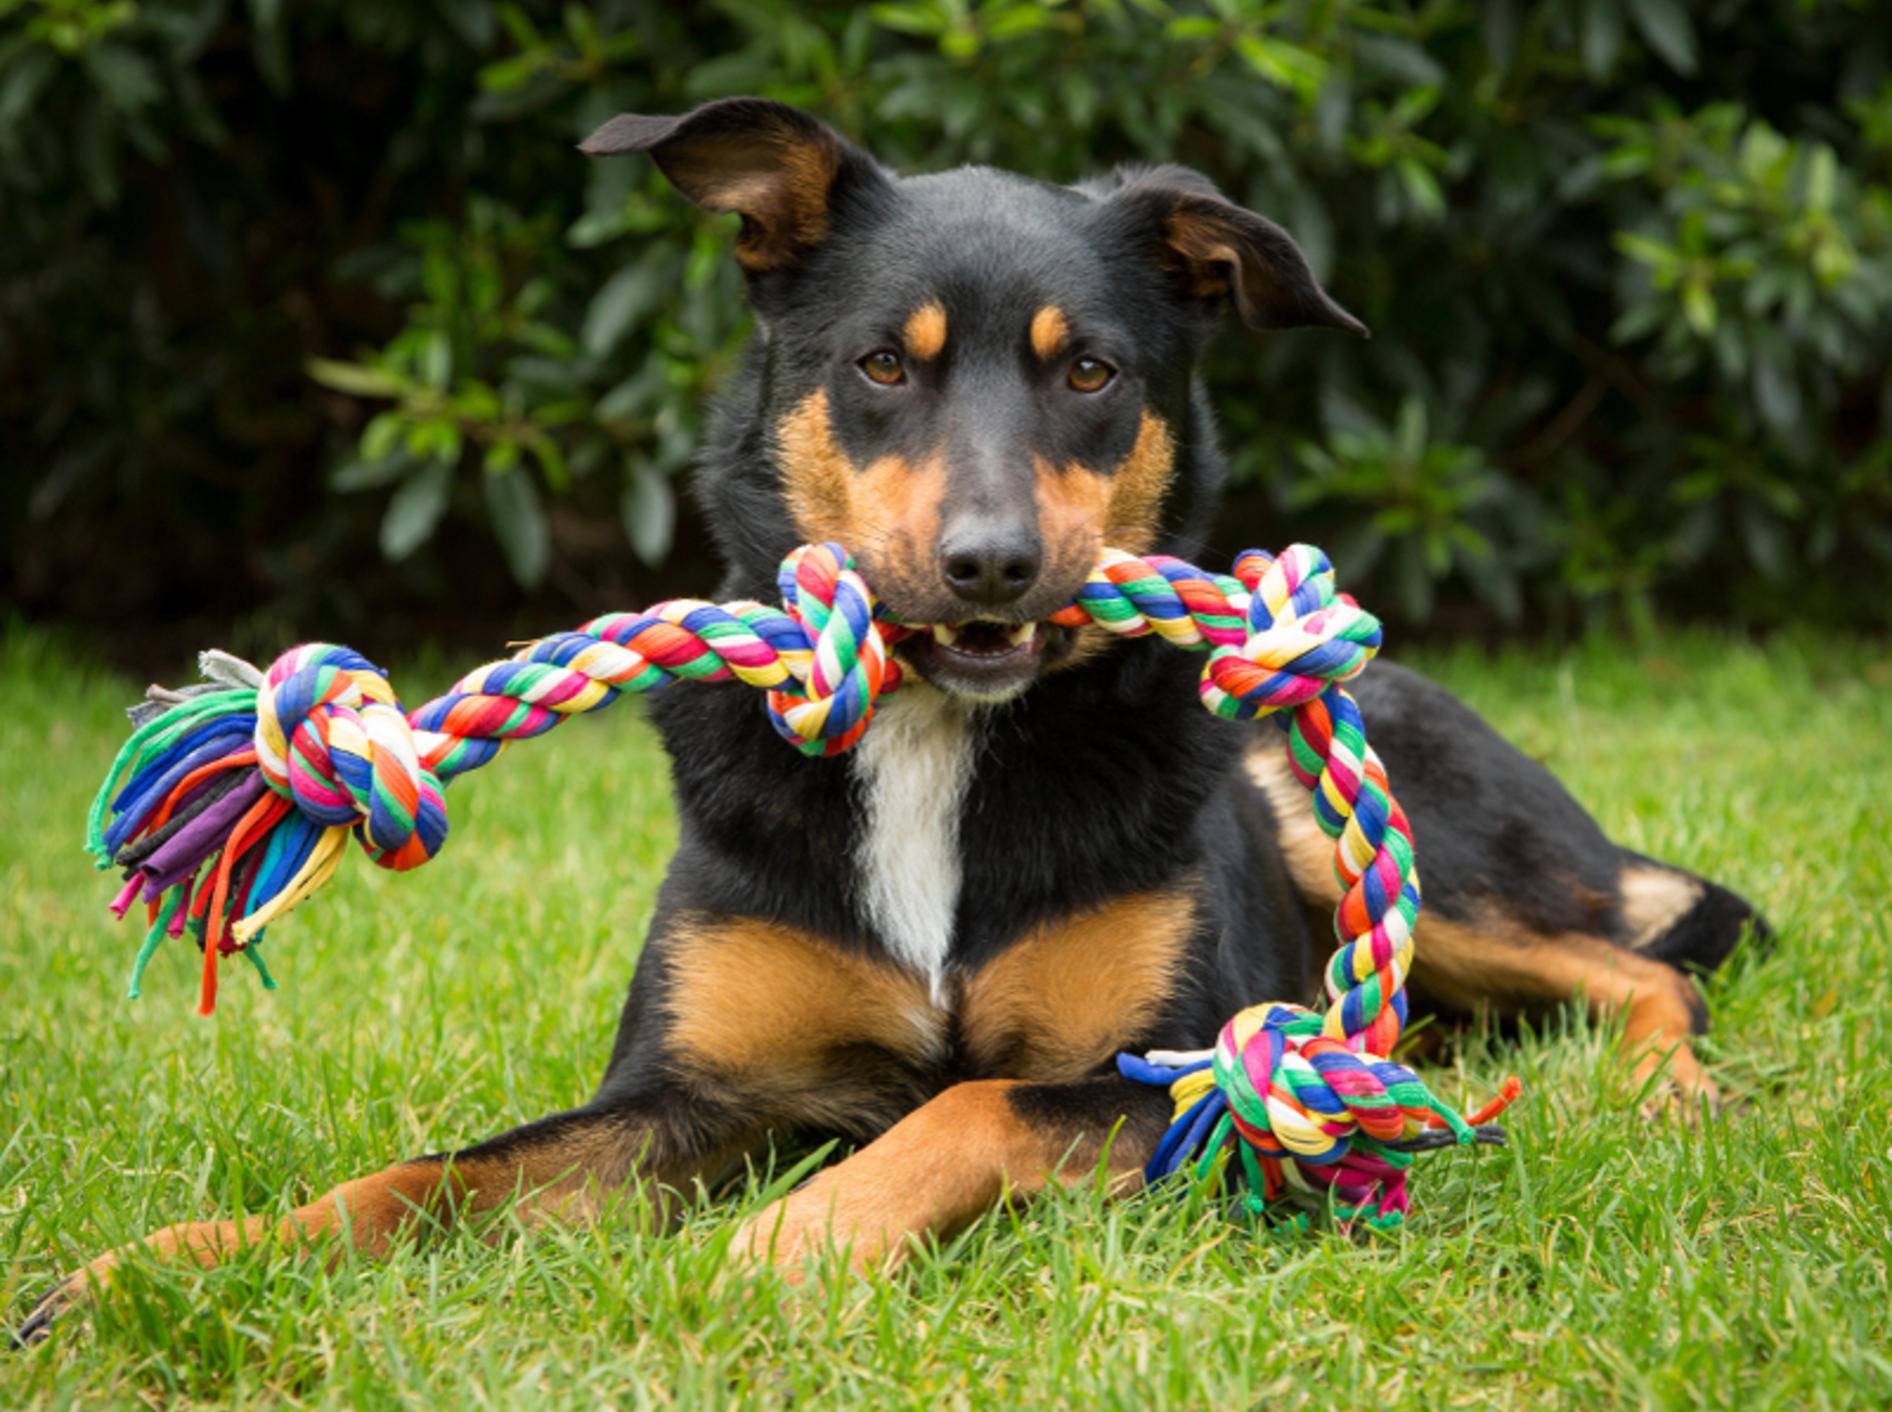 "Teilen? Nee, nee! Das ist mein Spielzeug – warum sollte ich das abgeben?", denkt sich dieser Hund vielleicht und meint es sicher nicht böse – Shutterstock / K.A.Willis